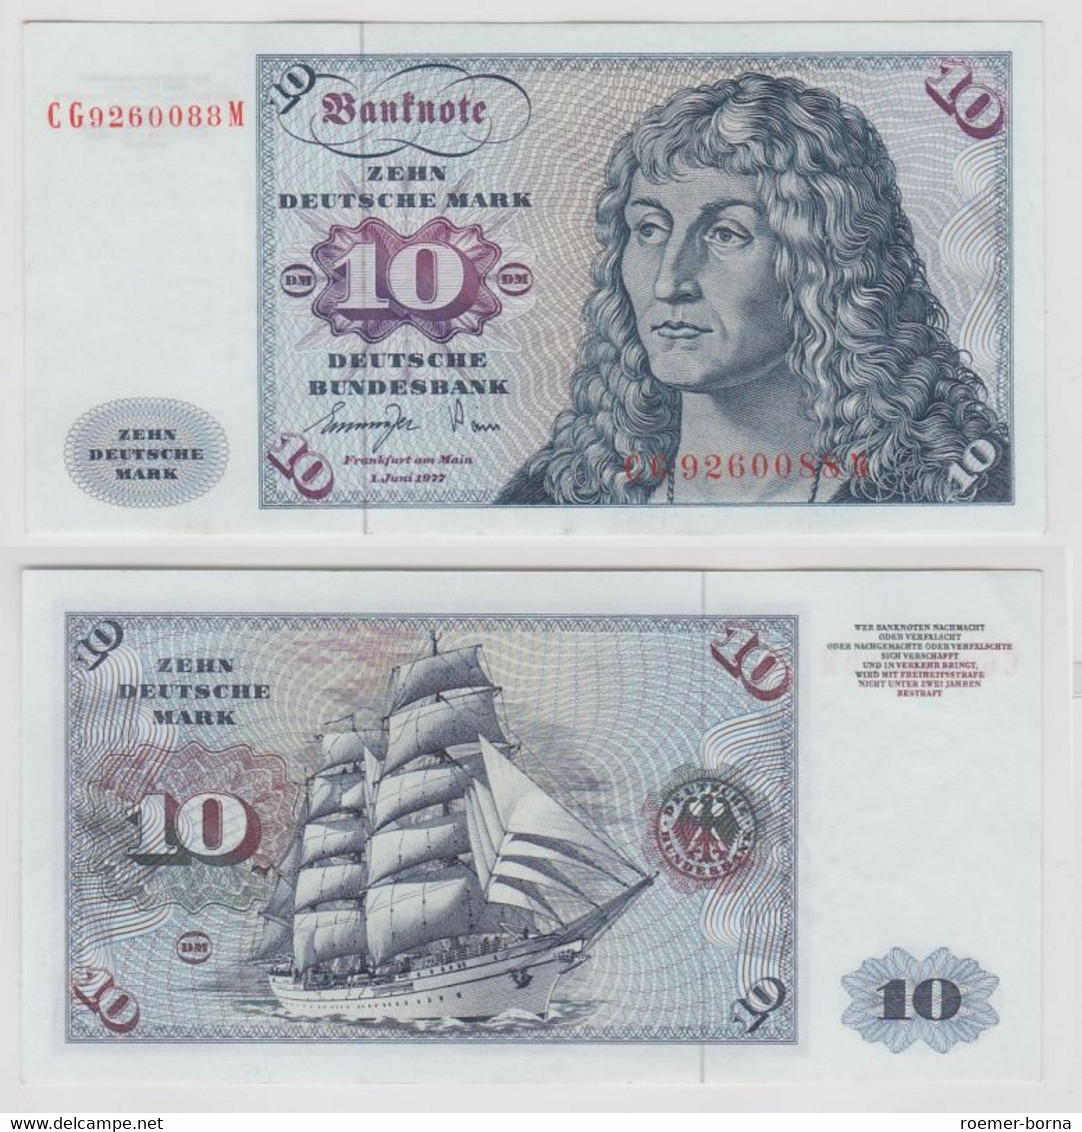 T147188 Banknote 10 DM Deutsche Mark Ro. 275a Schein 1.Juni 1977 KN CG 9260088 M - 10 Deutsche Mark